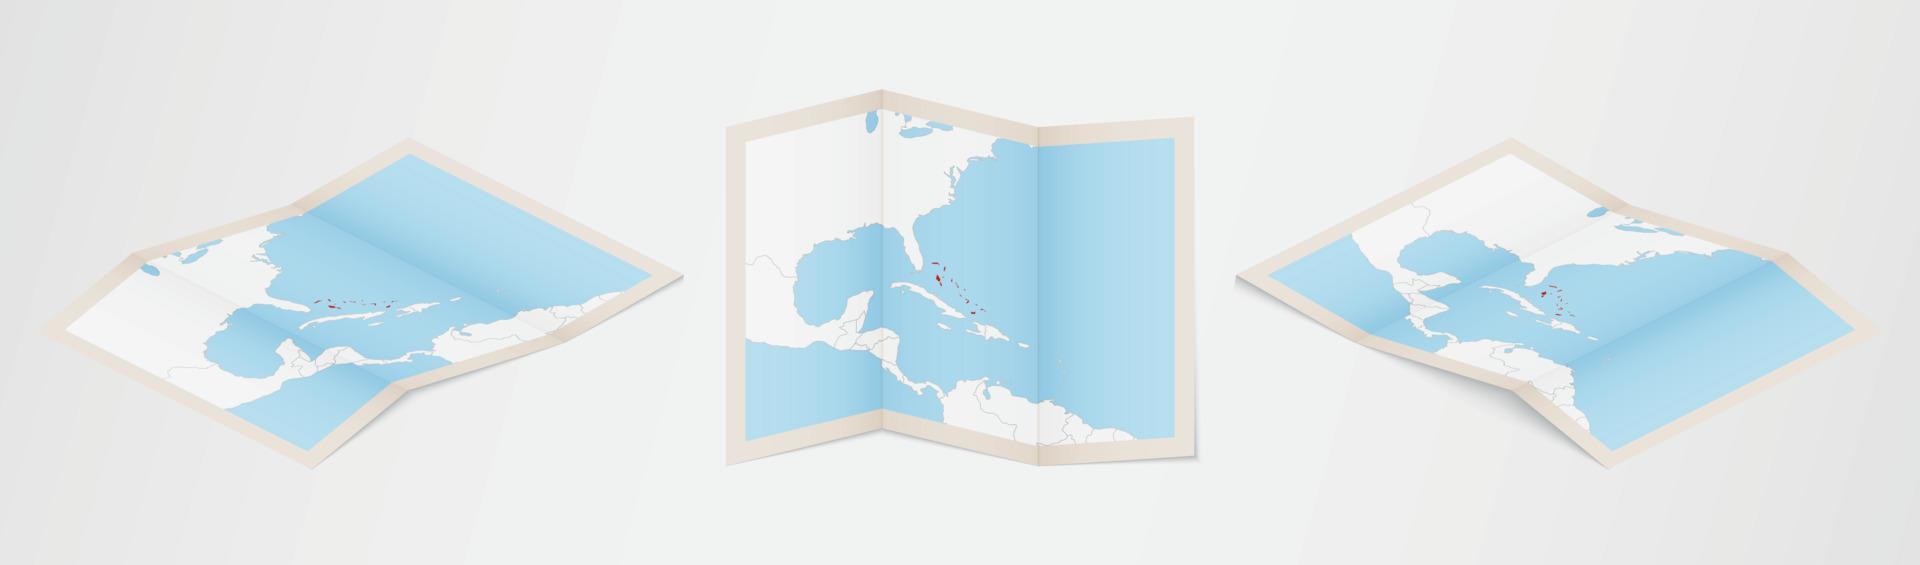 gevouwen kaart van de Bahamas in drie verschillend versies. vector